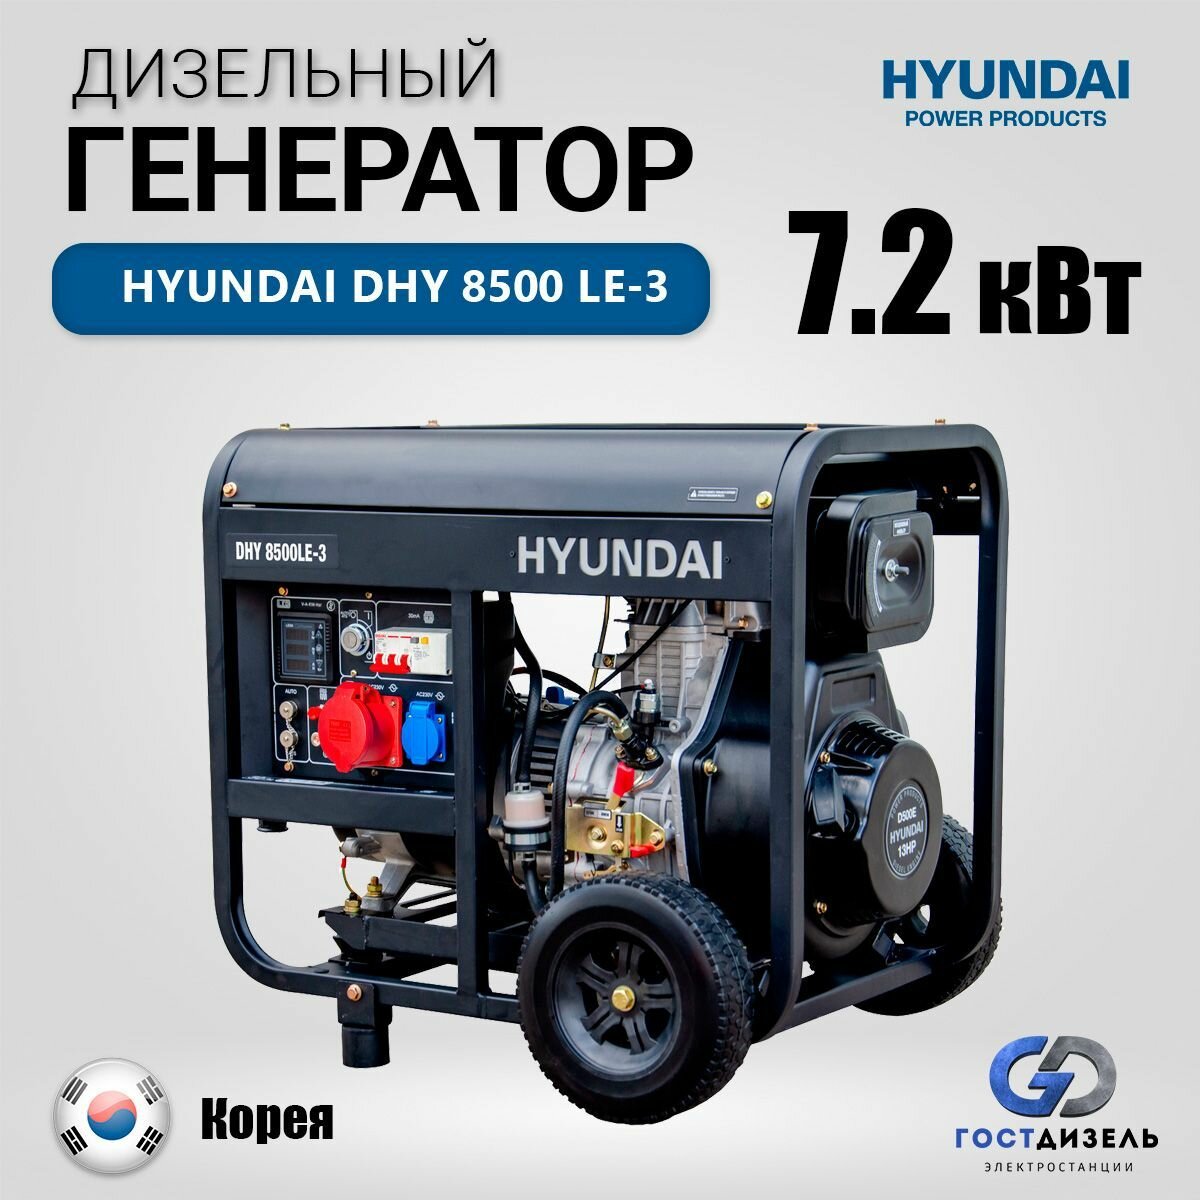 Дизельный генератор Hyundai DHY 8500 LE-3 7.2 кВт, электрогенератор с ручным и электро запуском двигателя - фотография № 1